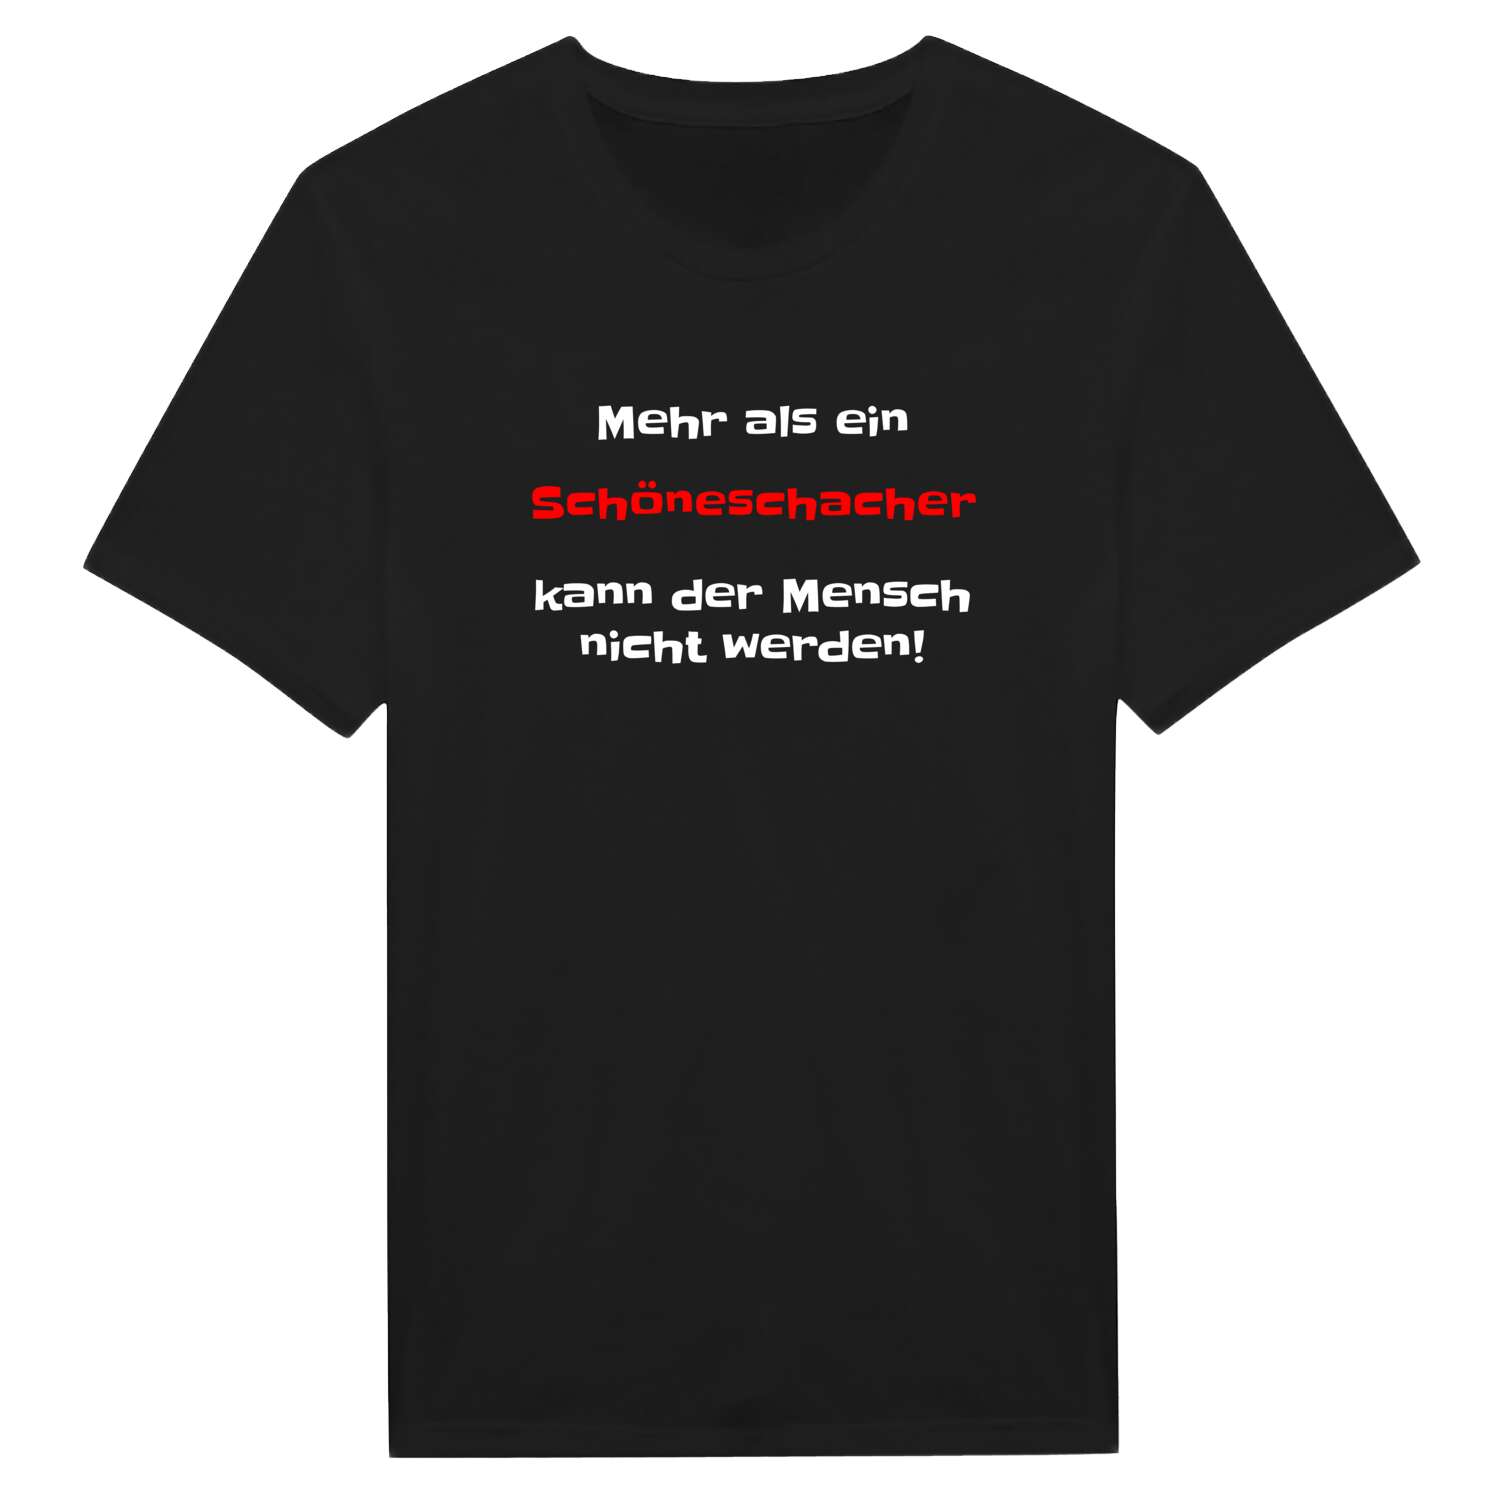 Schöneschach T-Shirt »Mehr als ein«